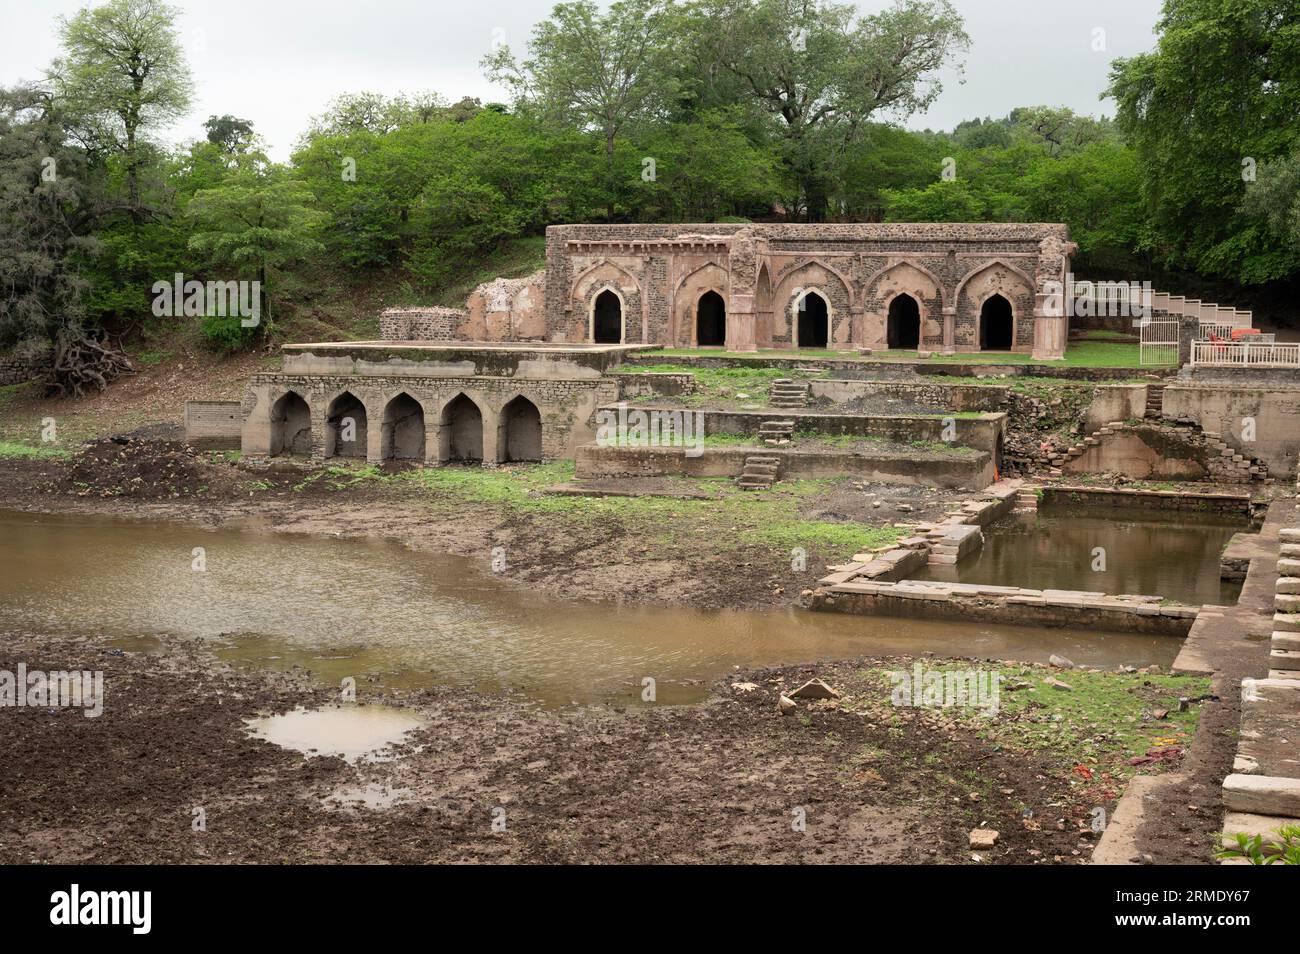 Ruins near Rewa Kund, located in Mandu, Madhya Pradesh, India Stock Photo